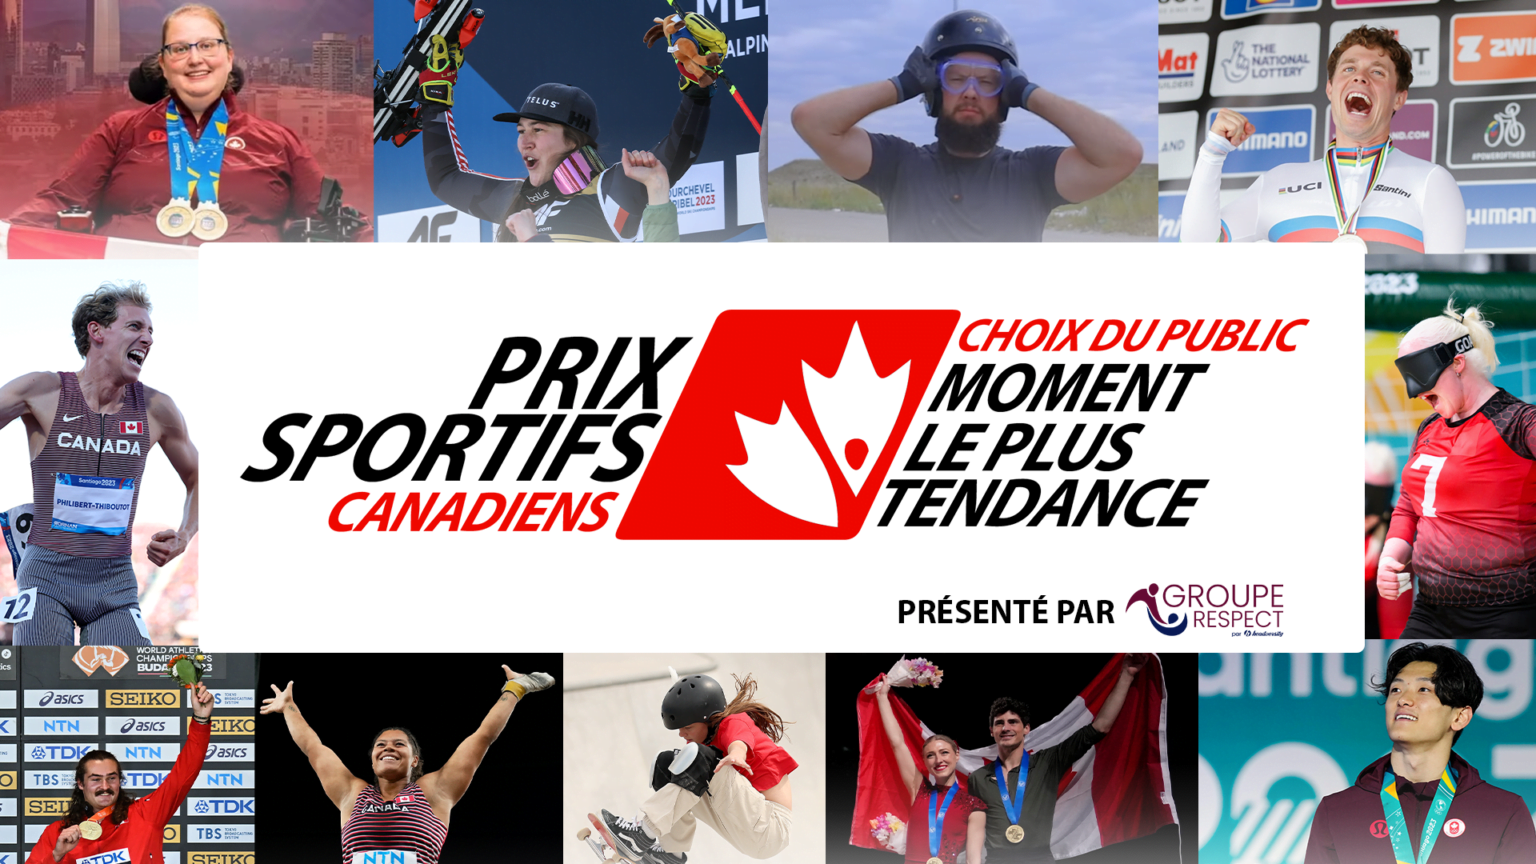 Prix Sportifs Canadiens Choix du public Moment le plus tendance de l’année Présenté par Groupe respect